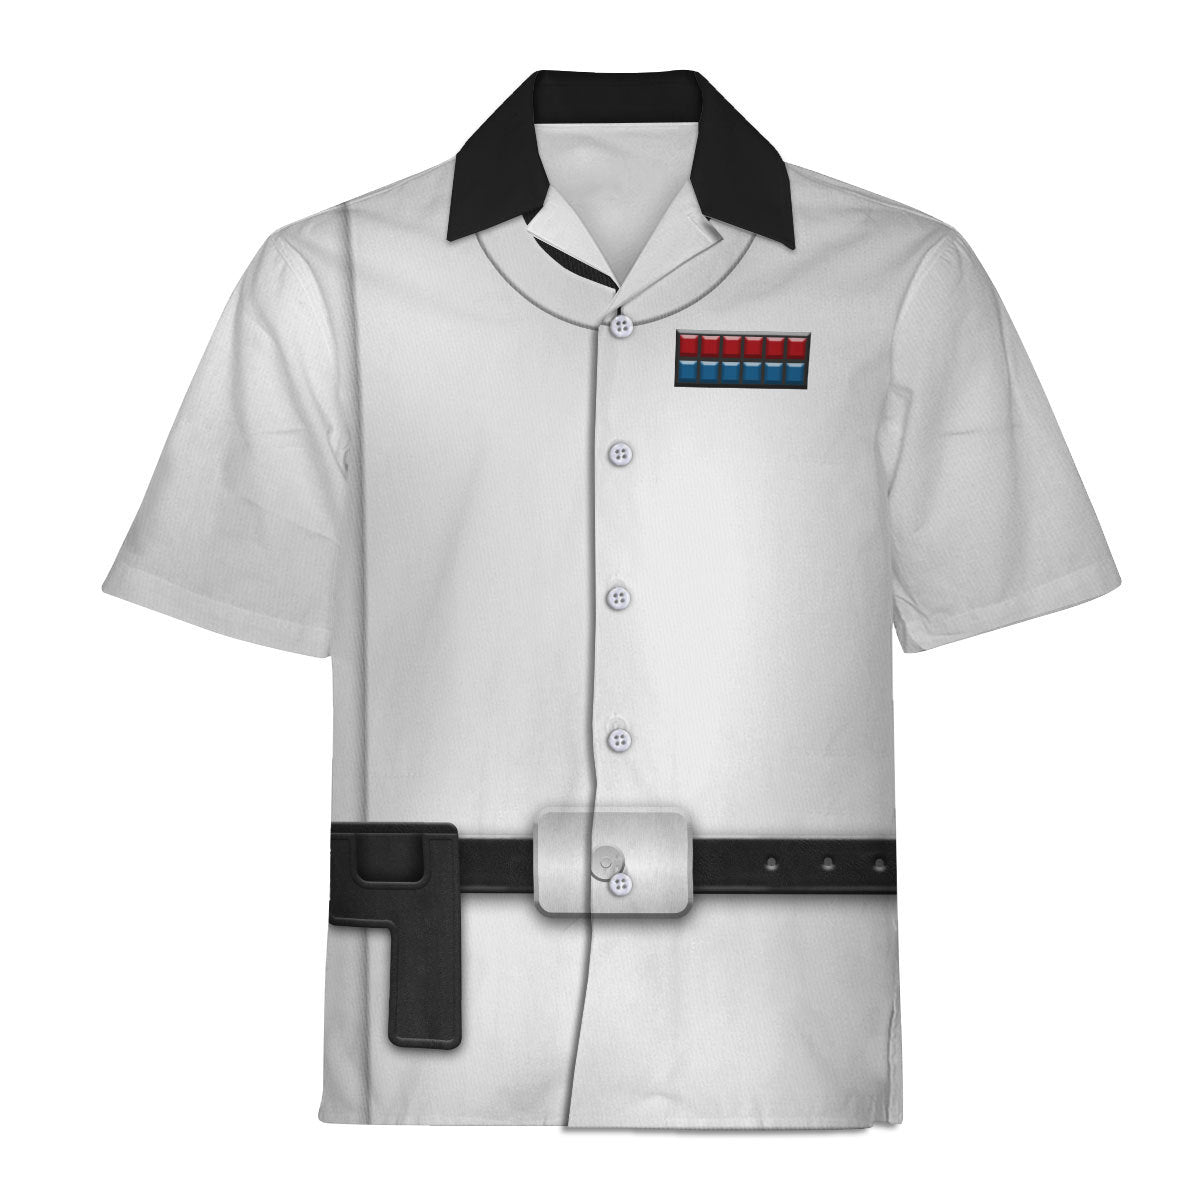 Star Wars Orson Krennic Costume - Hawaiian Shirt